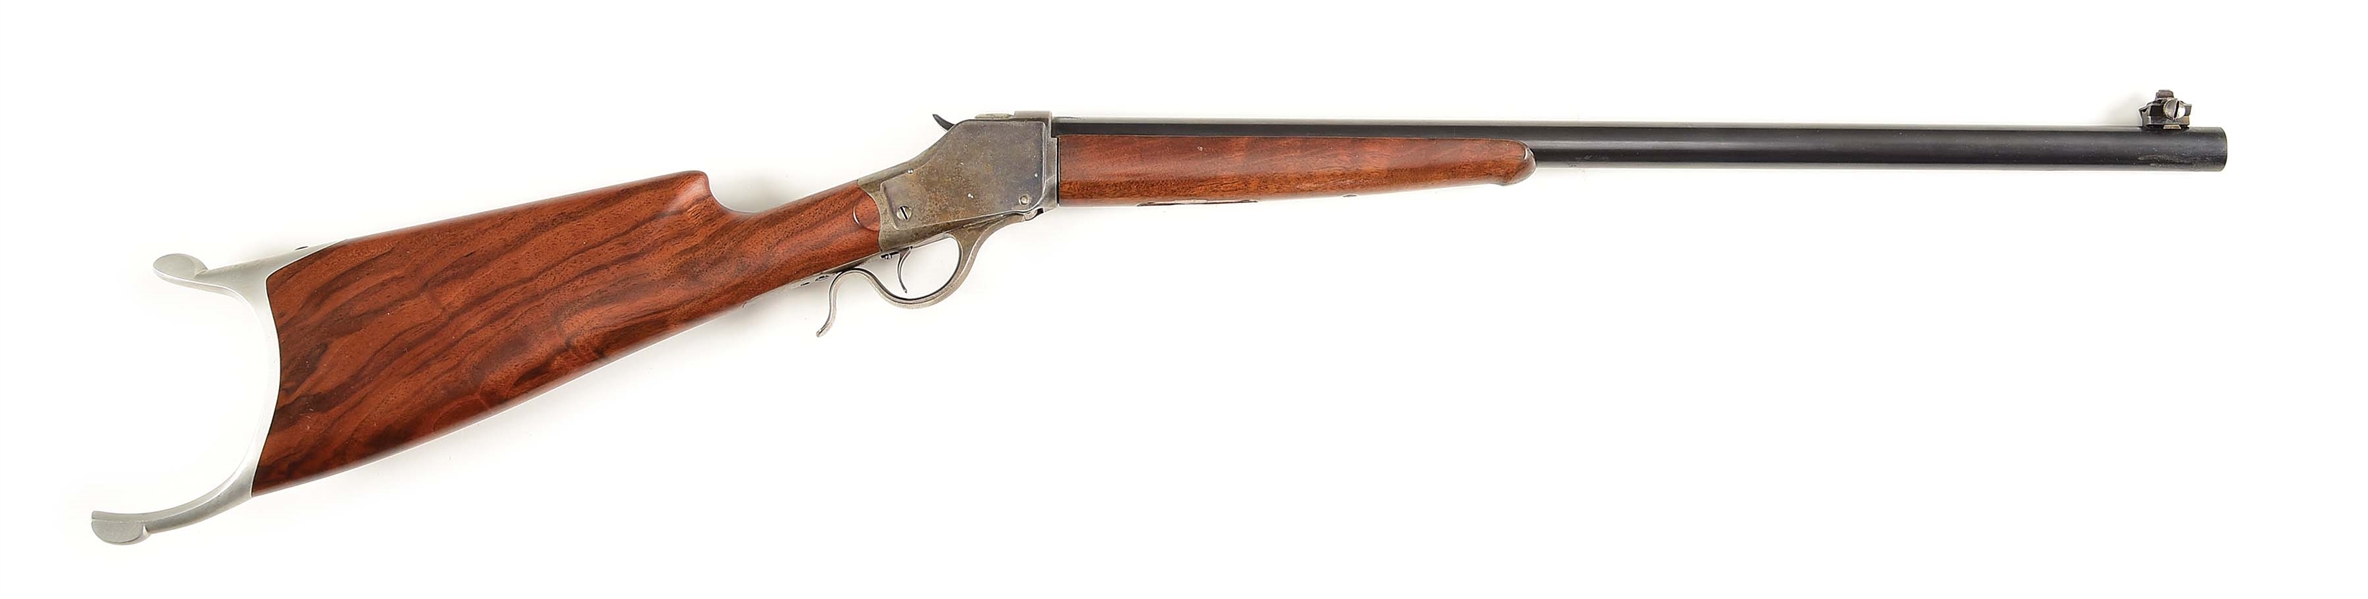 (A) WINCHESTER 1885 HI-WALL SINGLE SHOT RIFLE.